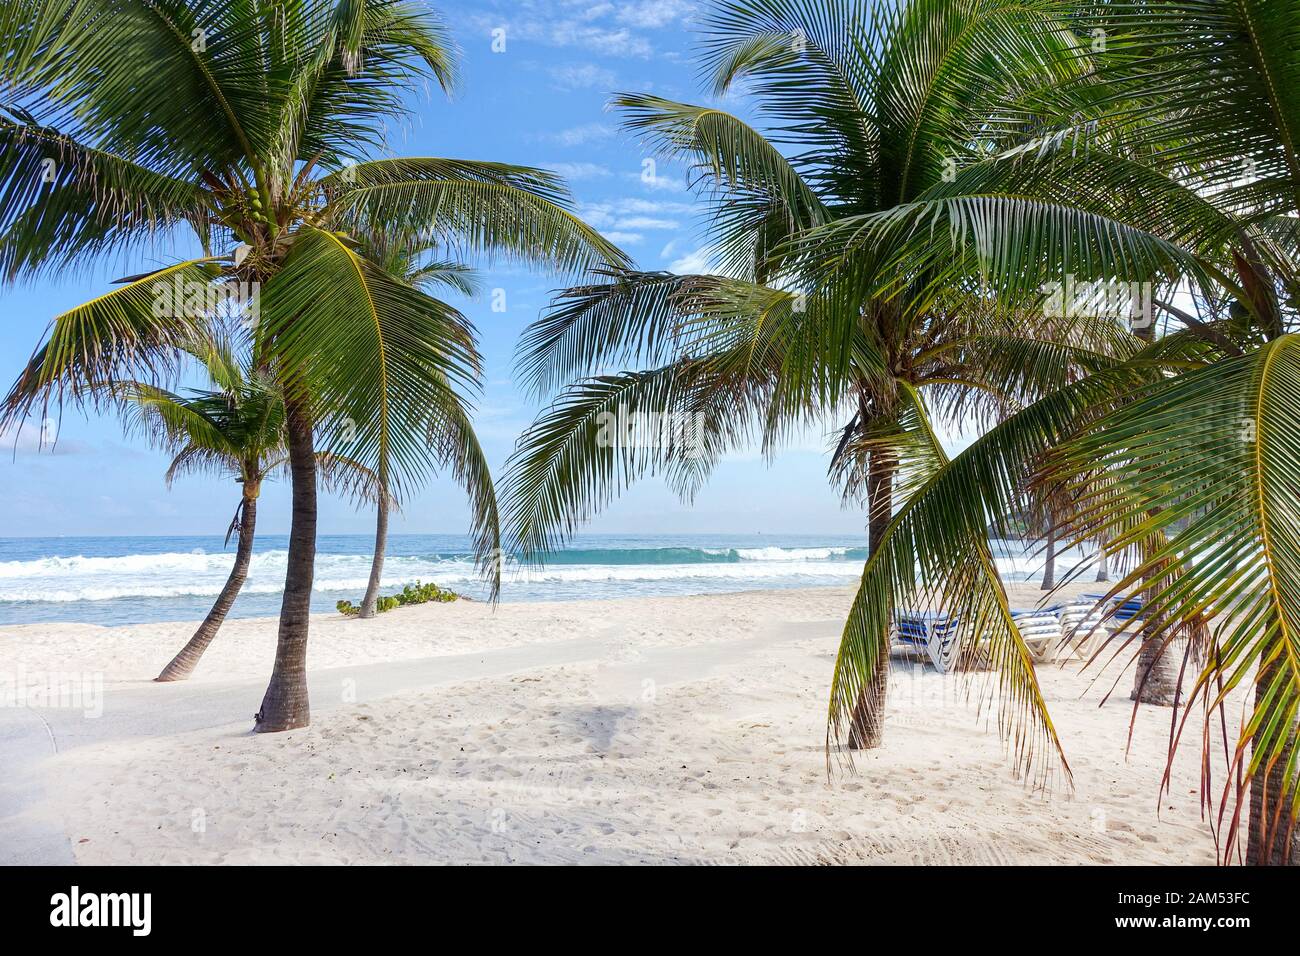 Una hermosa playa de arena blanca del Caribe cubierta de palmeras con olas del mar turquesa del Caribe que rompen en la costa Foto de stock